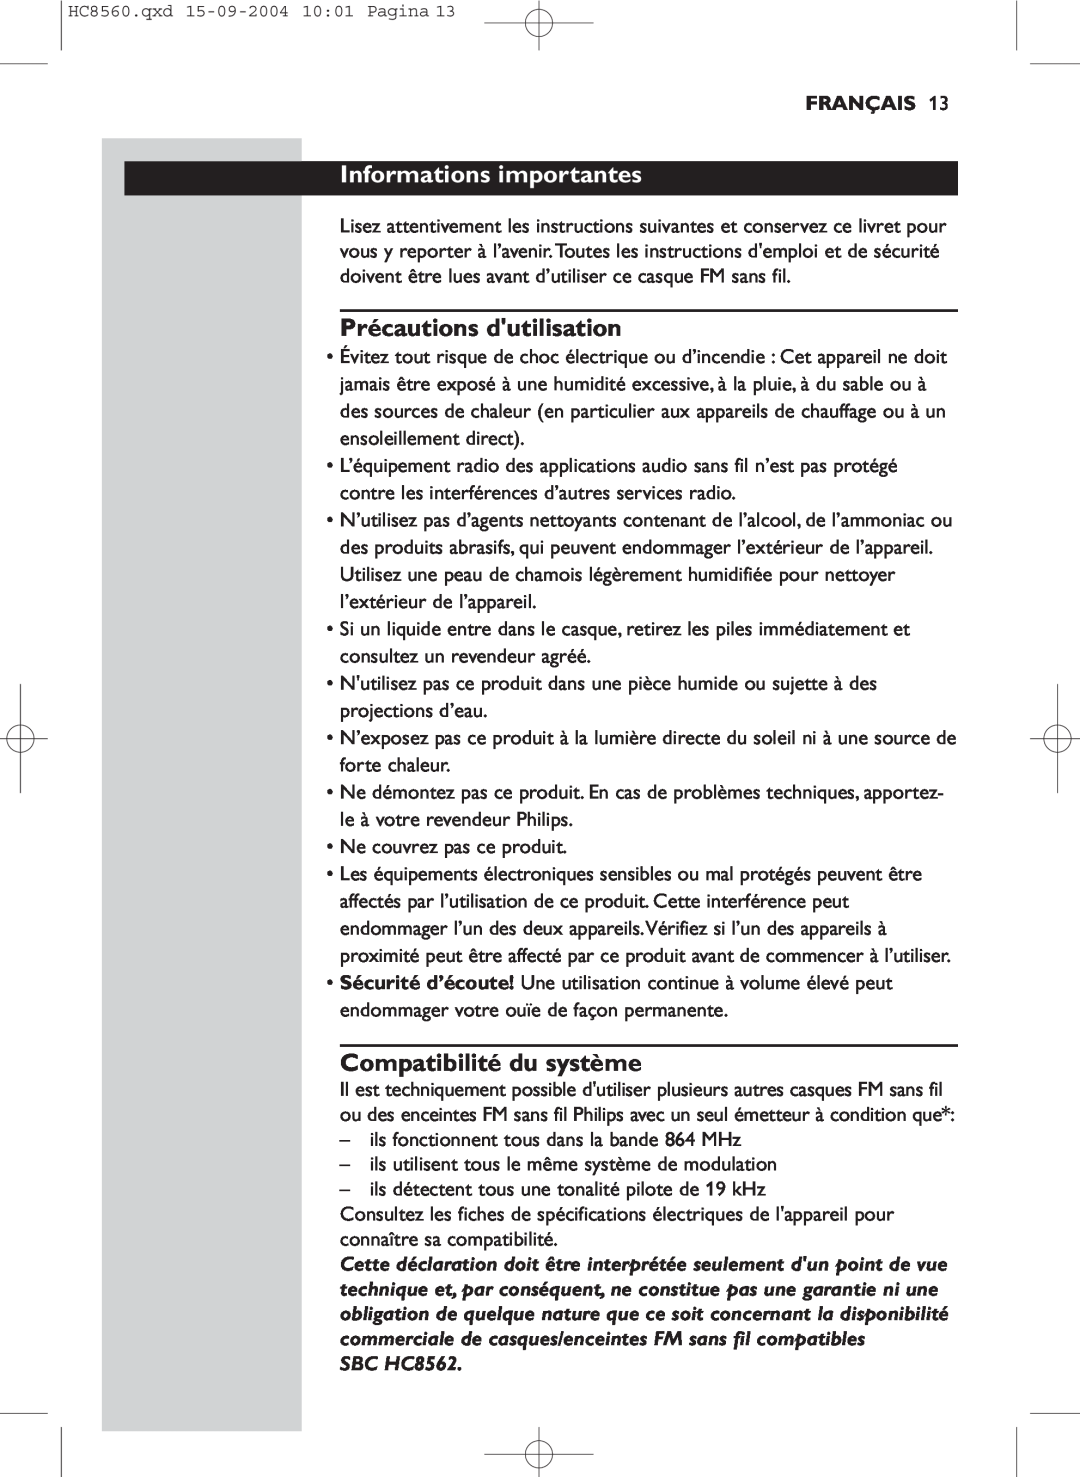 Philips HC 8560 manual Informations importantes, Précautions dutilisation, Compatibilité du système, Français, SBC HC8562 